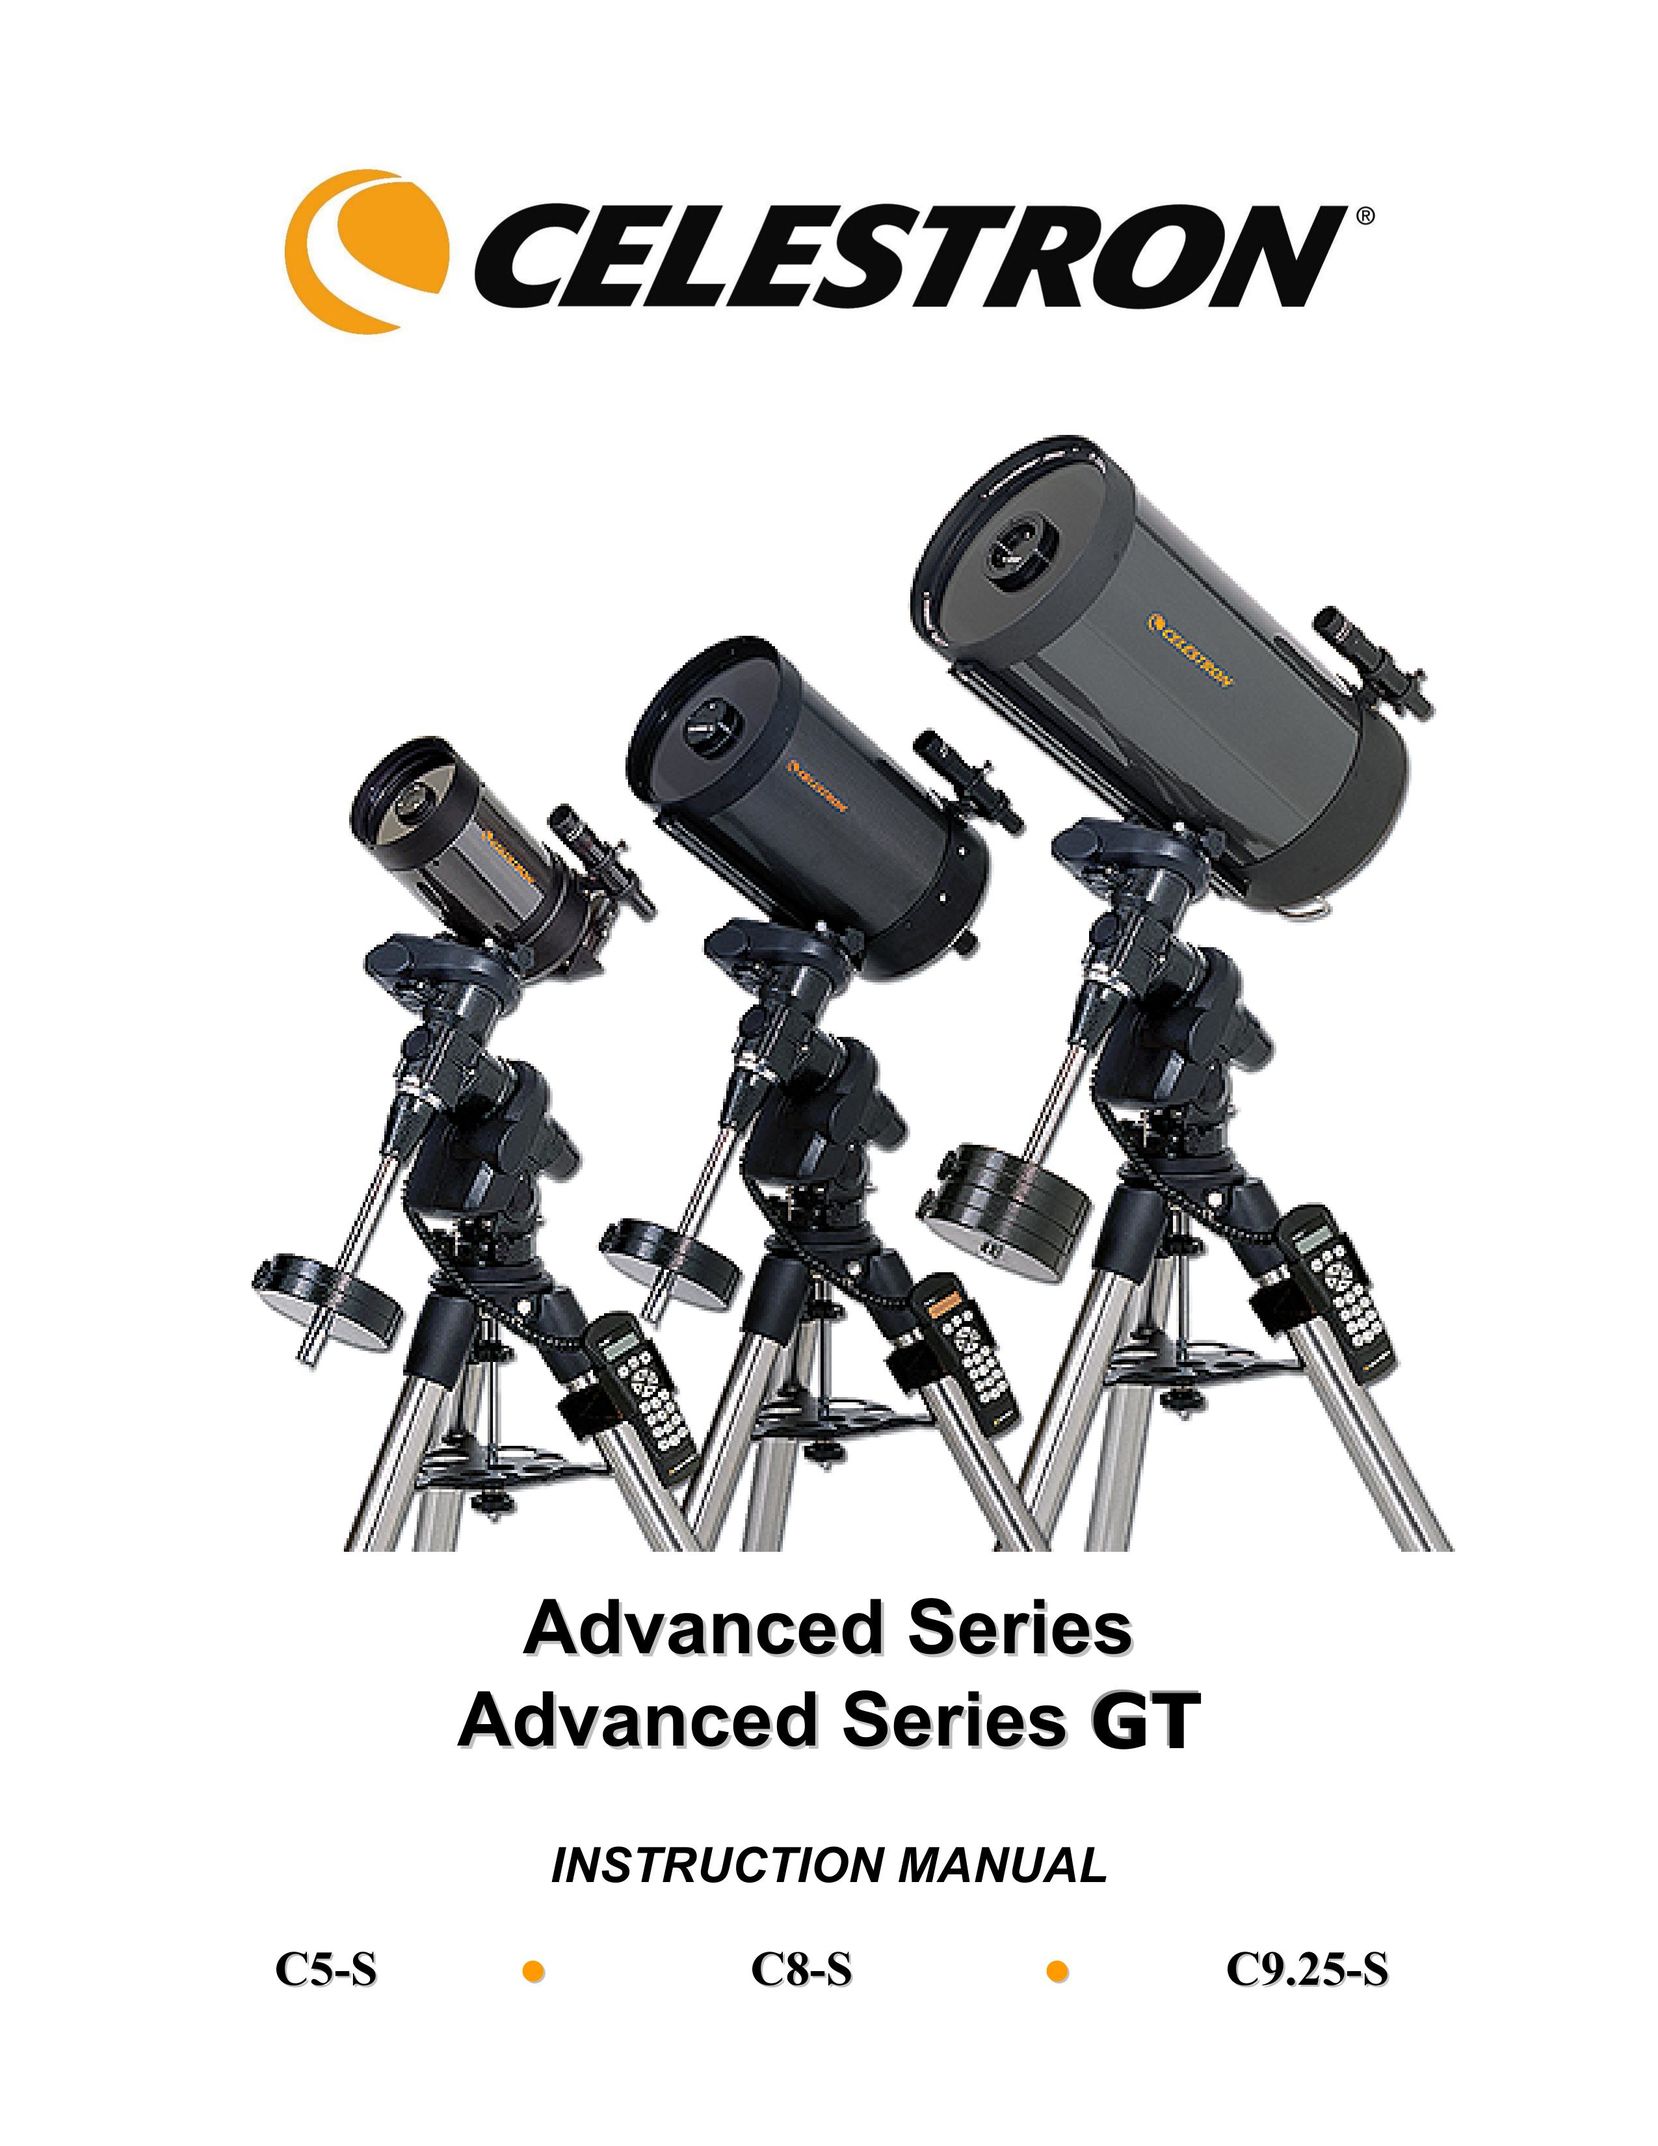 Celestron C9.25-S Binoculars User Manual